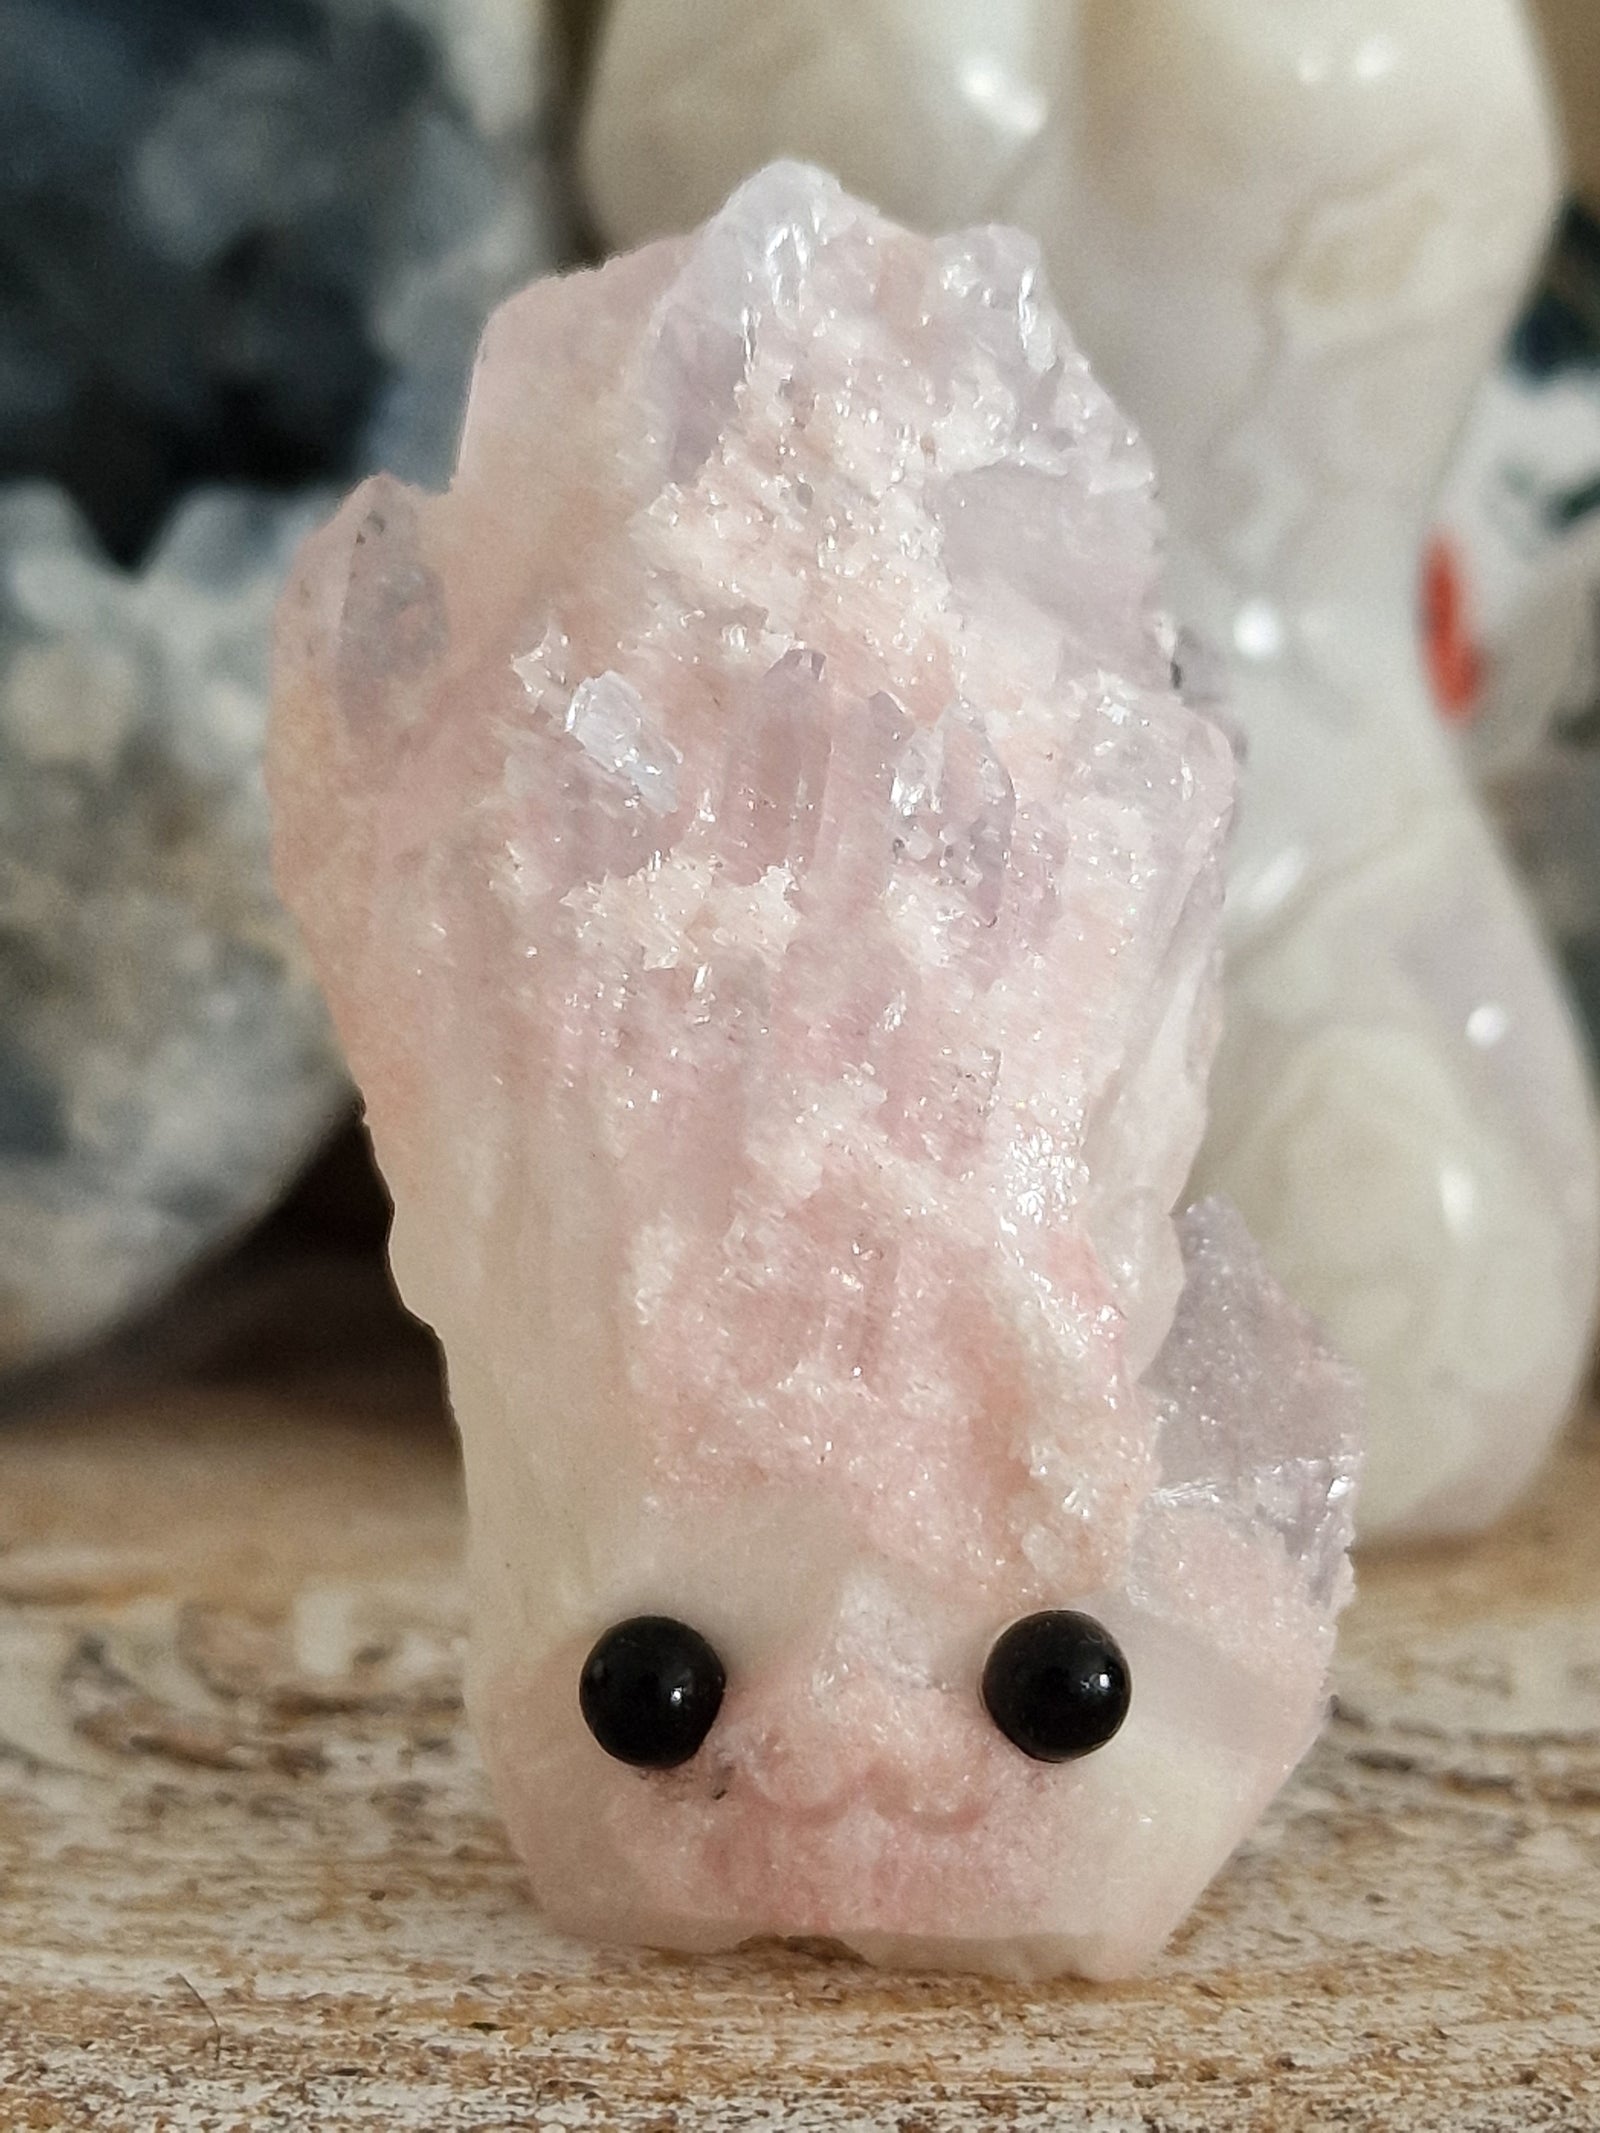 Norbert: bonhomme en quartz rose cristallisé